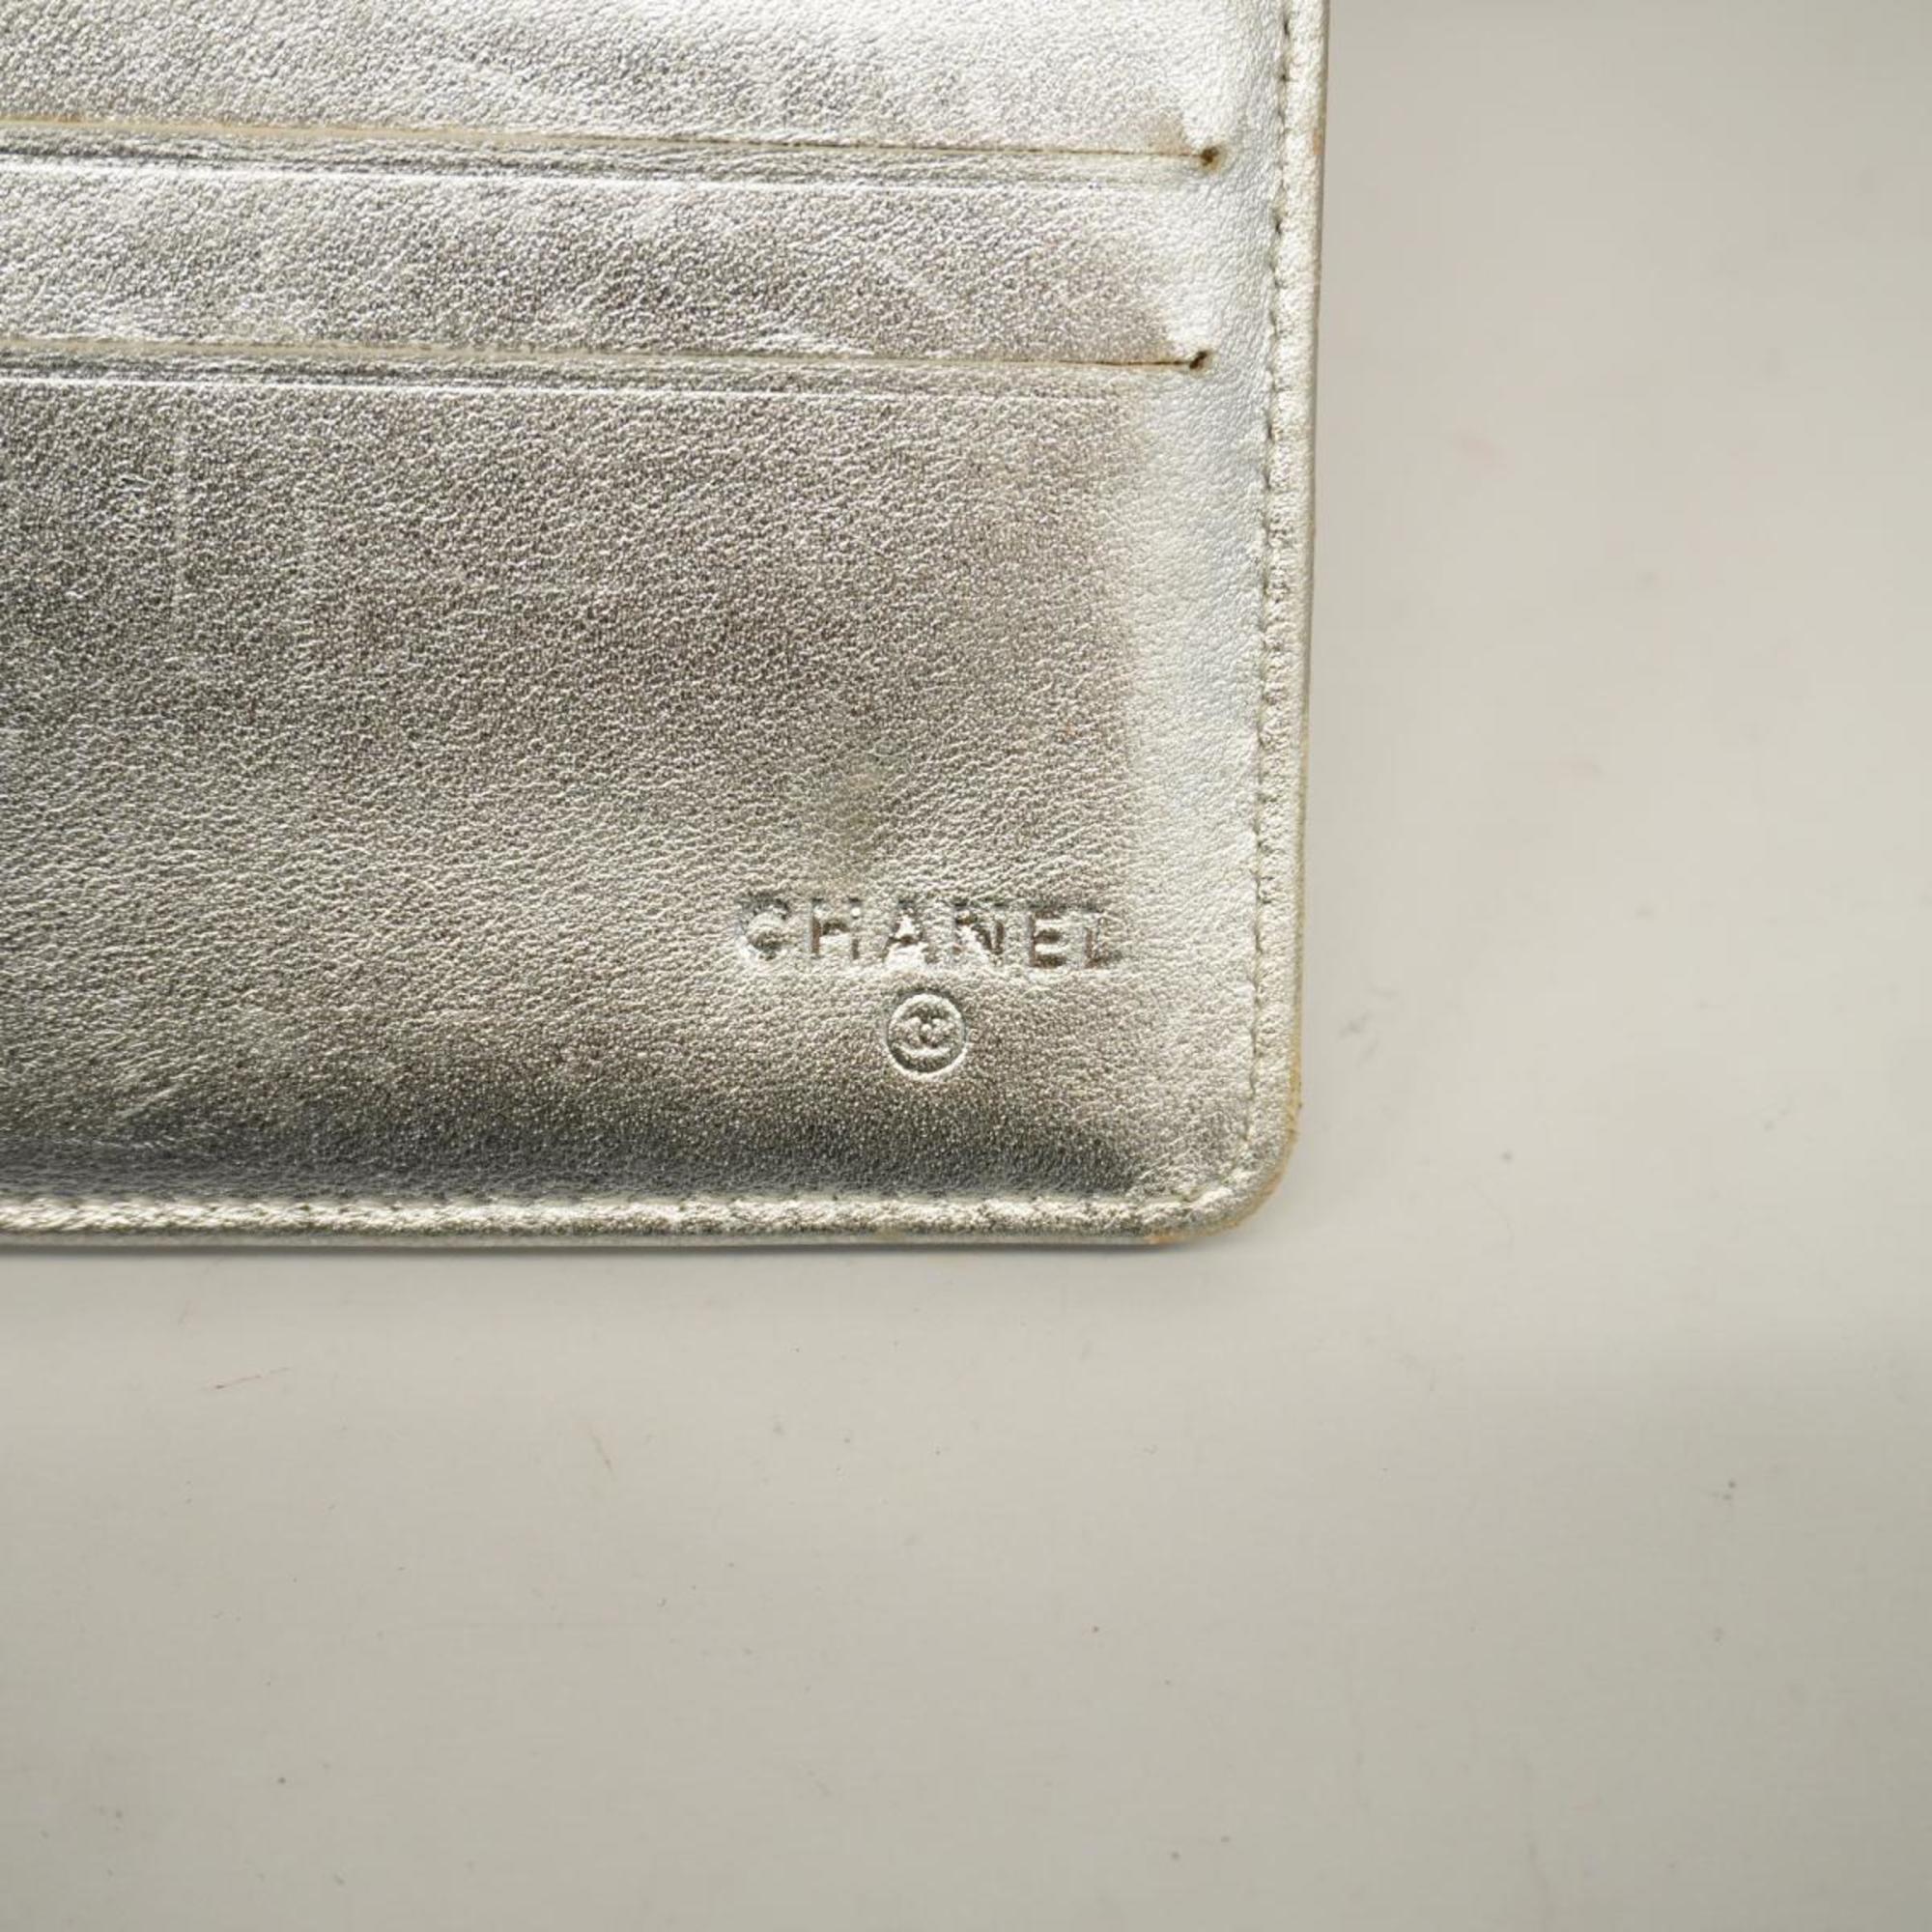 シャネル(Chanel) シャネル 三つ折り長財布 マトラッセ ラムスキン シルバー   レディース